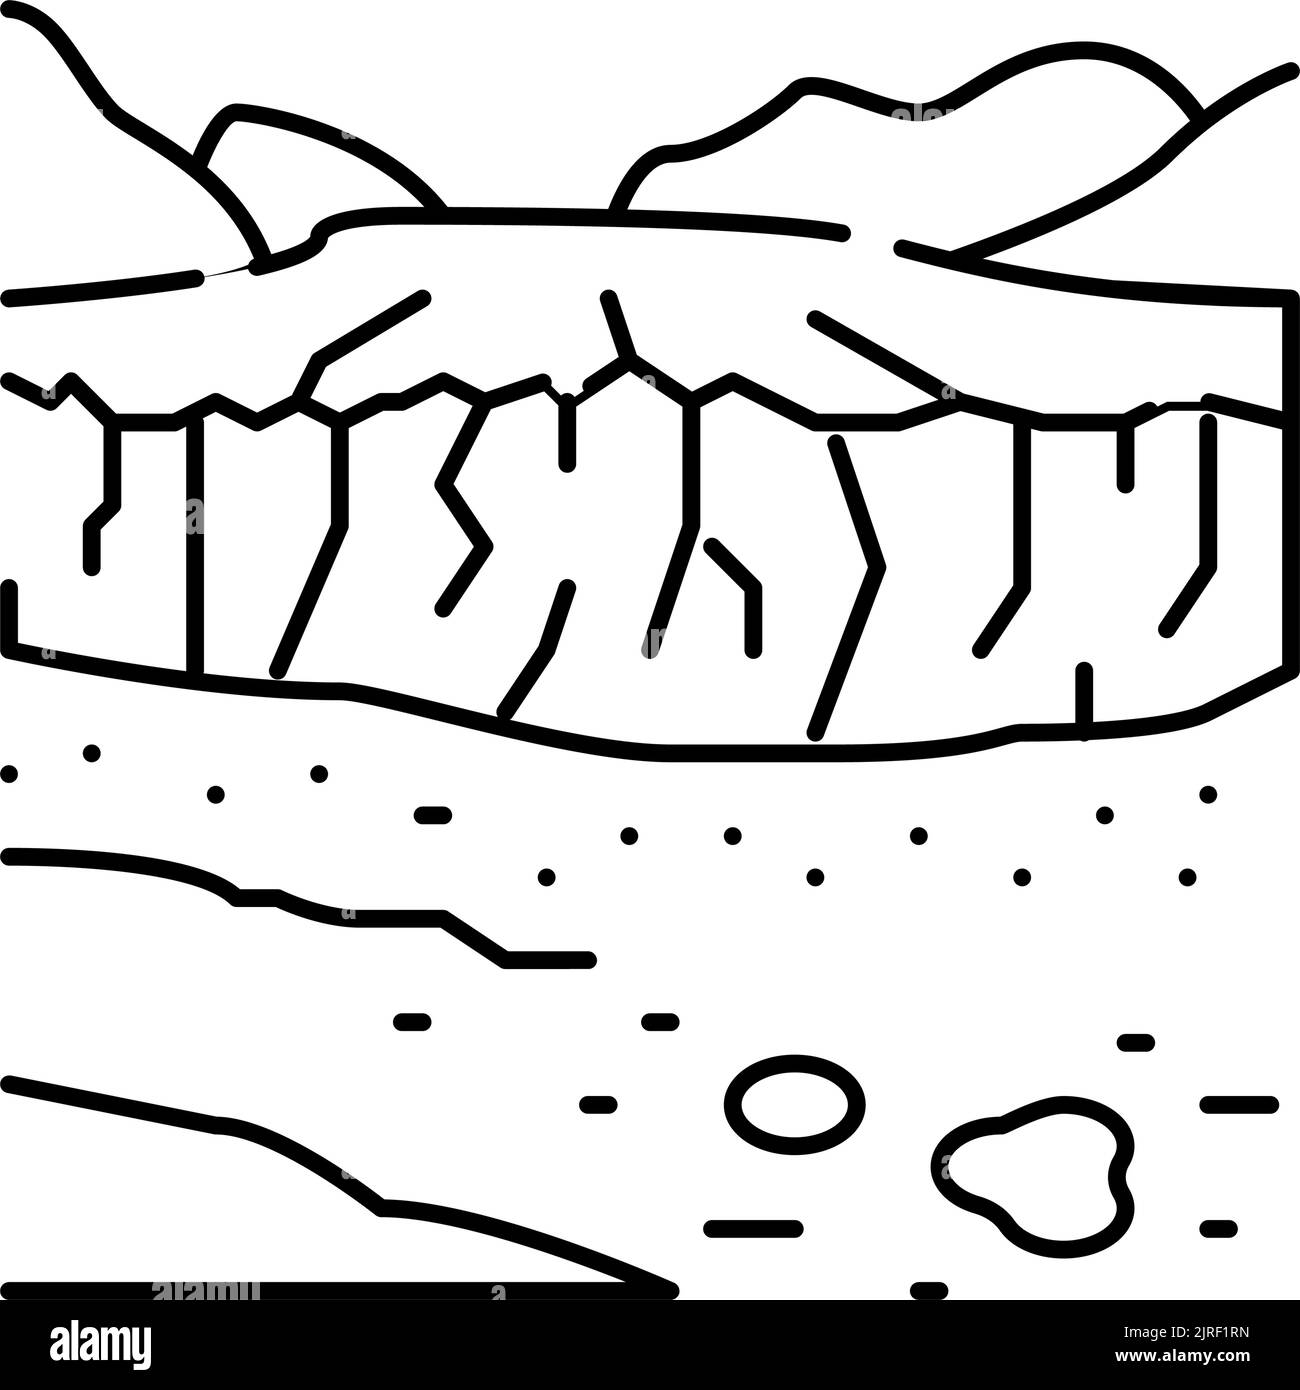 abbildung des Symbols für die gletscherlinie von perito moreno Stock Vektor